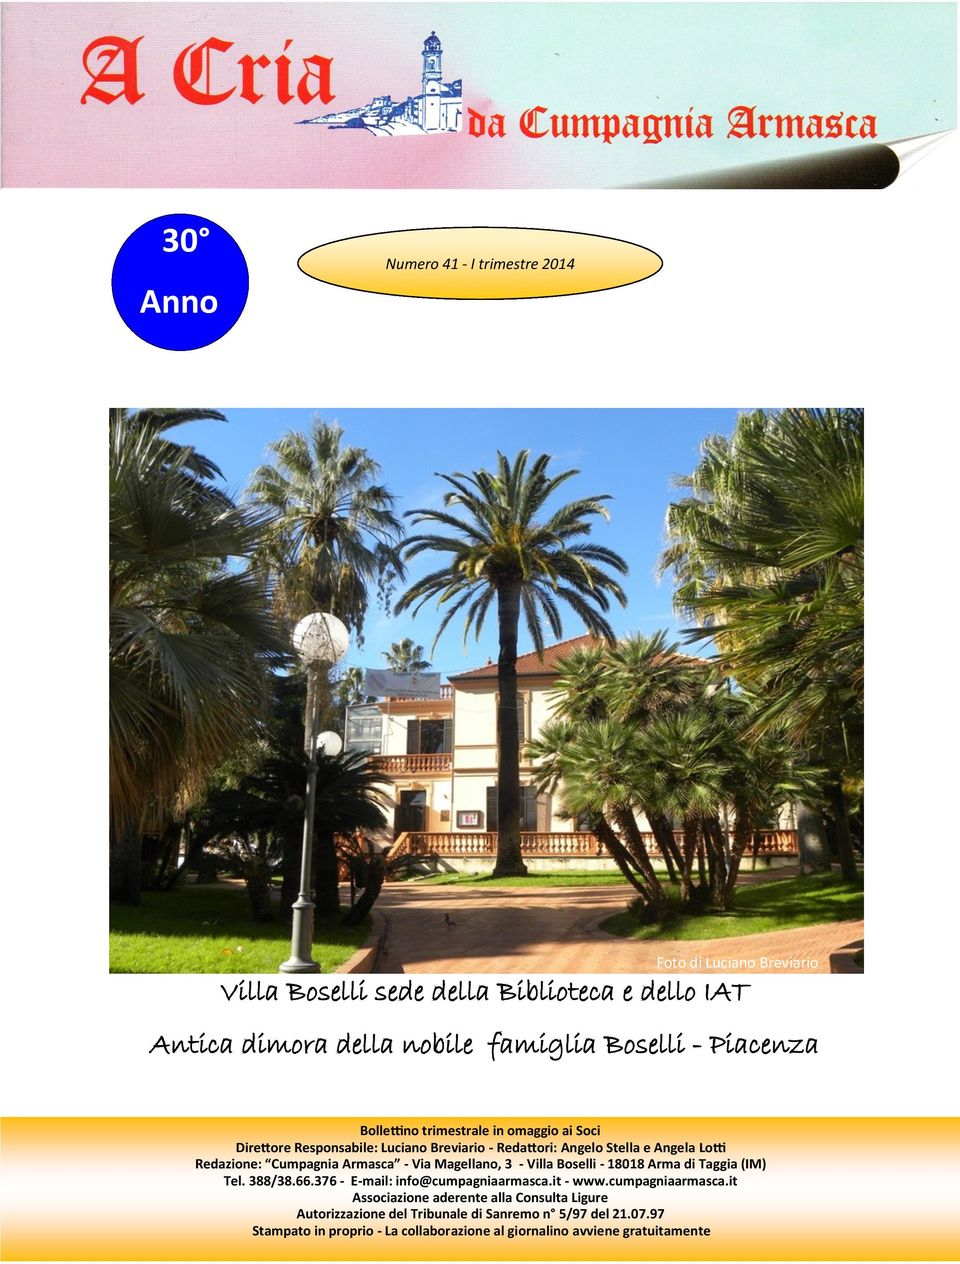 Cumpagnia Armasca - Via Magellano, 3 - Villa Boselli - 18018 Arma di Taggia (IM) Tel. 388/38.66.376 - E-mail: info@cumpagniaarmasca.